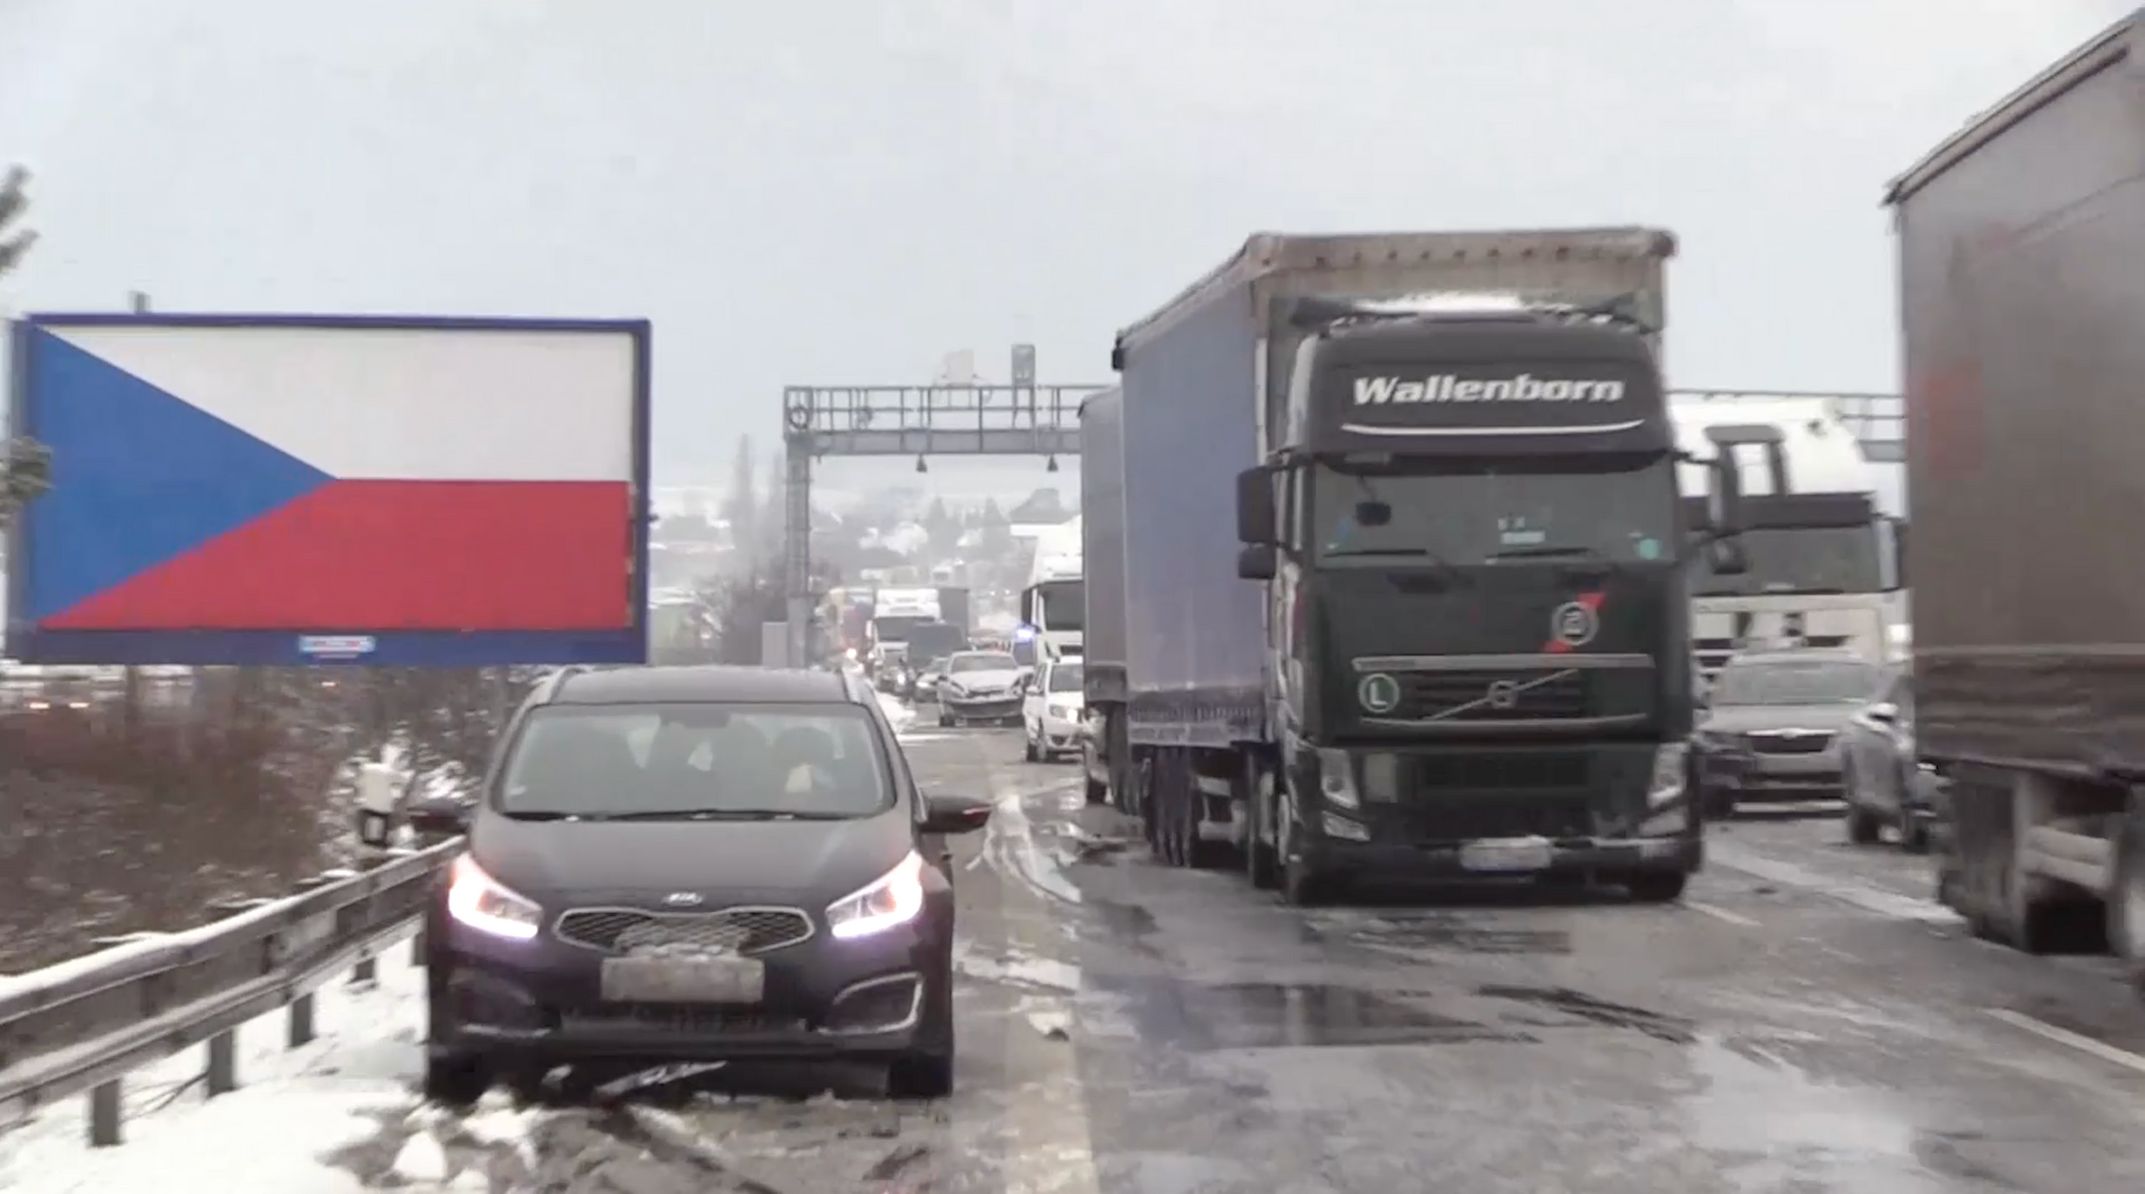 Sněhová kalamita zasáhla i dálnici D10. Ta dnes byla ve směru na Prahu uzavřená na tři hodiny